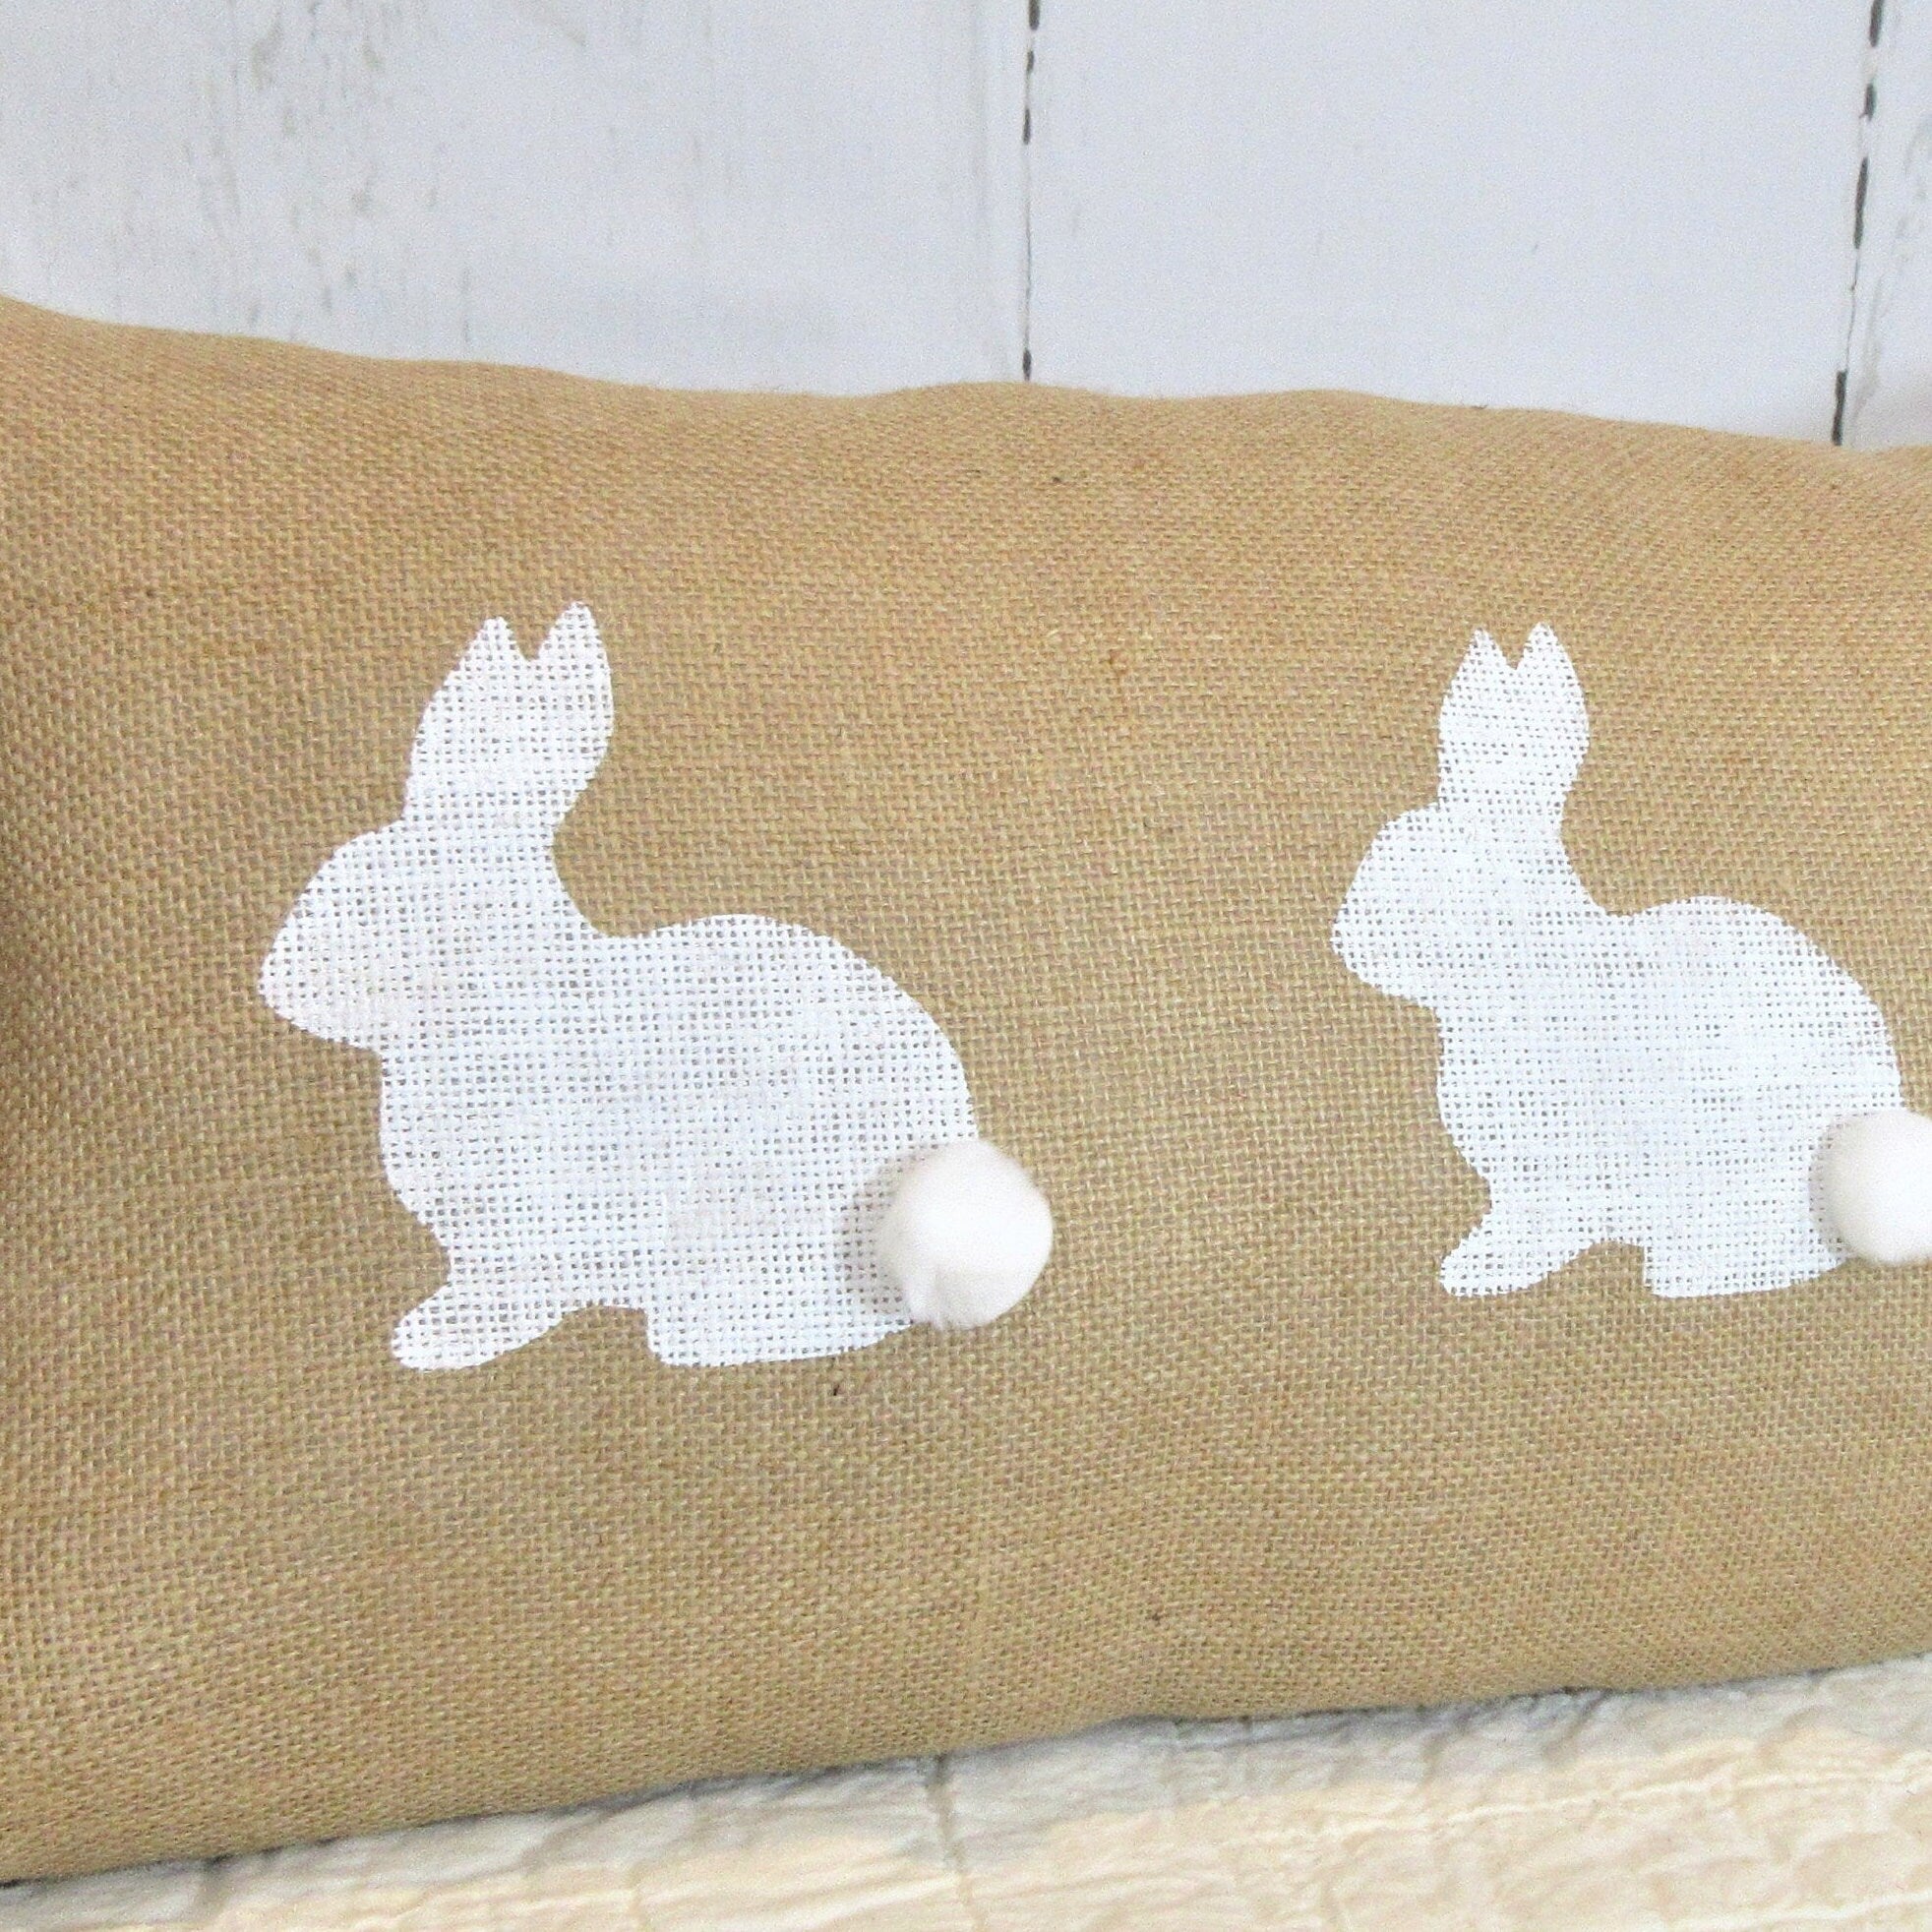 Bunny lumbar pillow cover